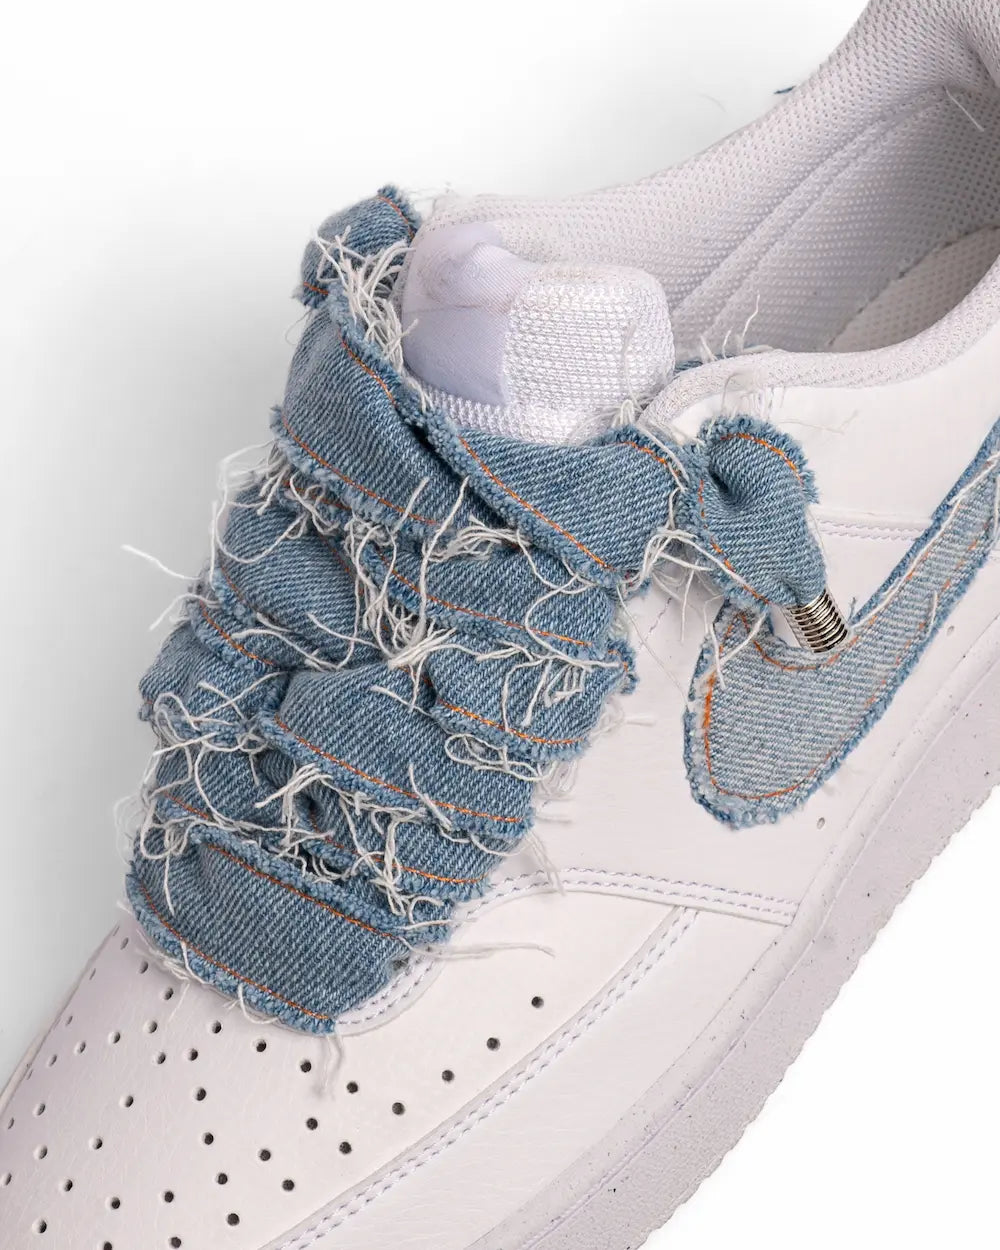 Nike custom con Swoosh rivestito in jeans e lacci interamente realizzati a mano in denim